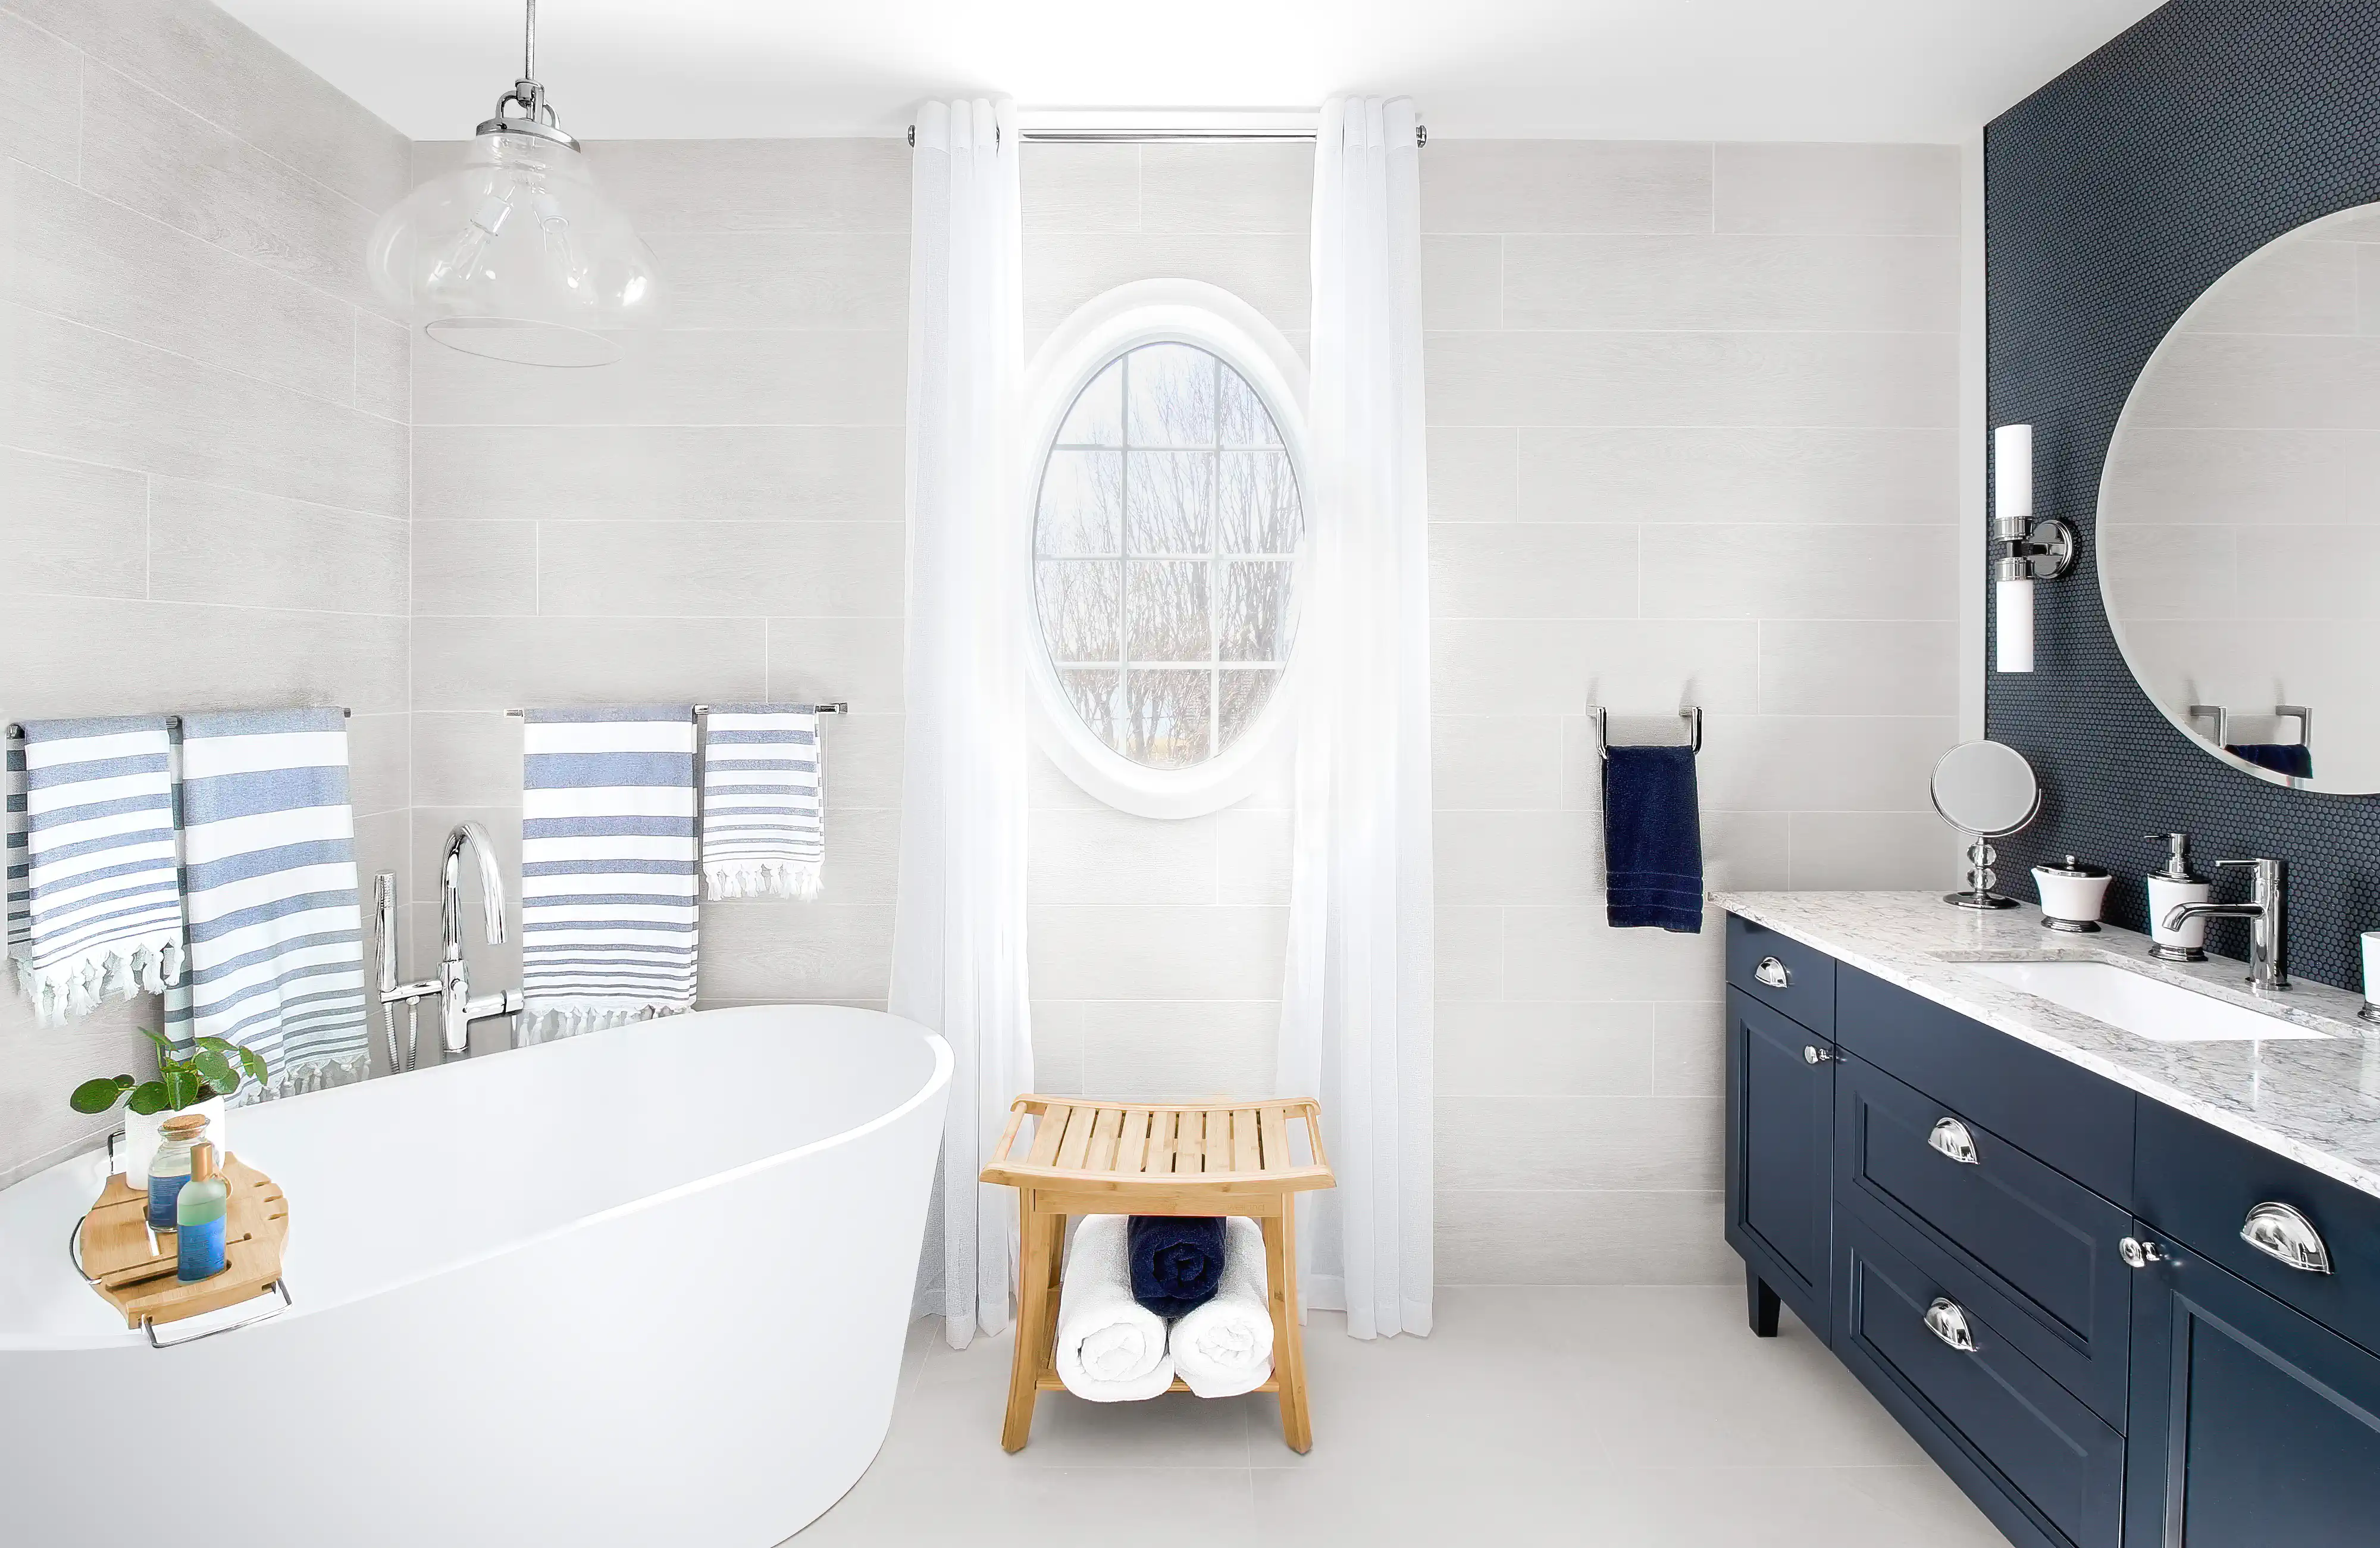 Une salle de bain blanche et bleue avec une baignoire sur pieds et un meuble-lavabo, intérieur signé Sarah Brown Design